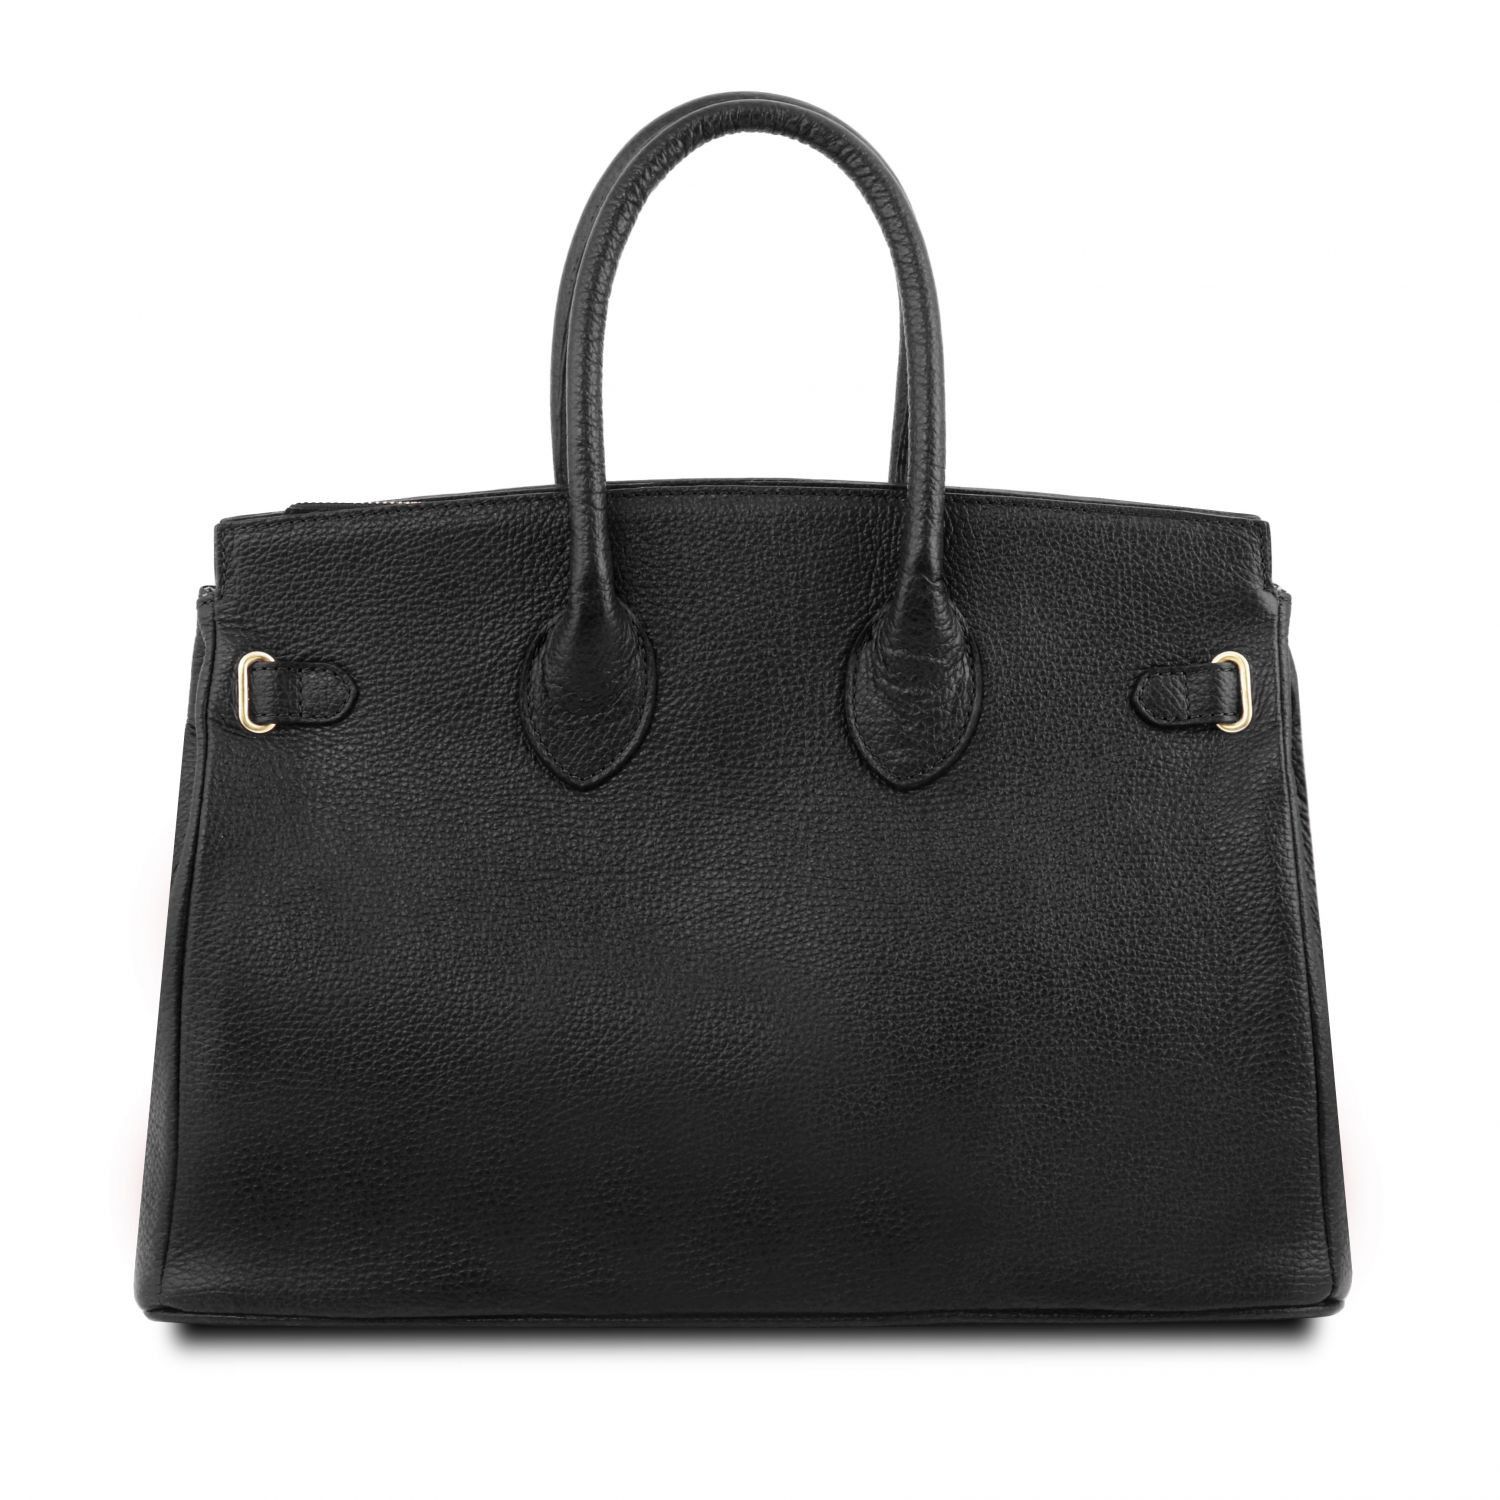 TL Bag - Sac à main pour femme avec finitions couleur or - Noir (TL141529)